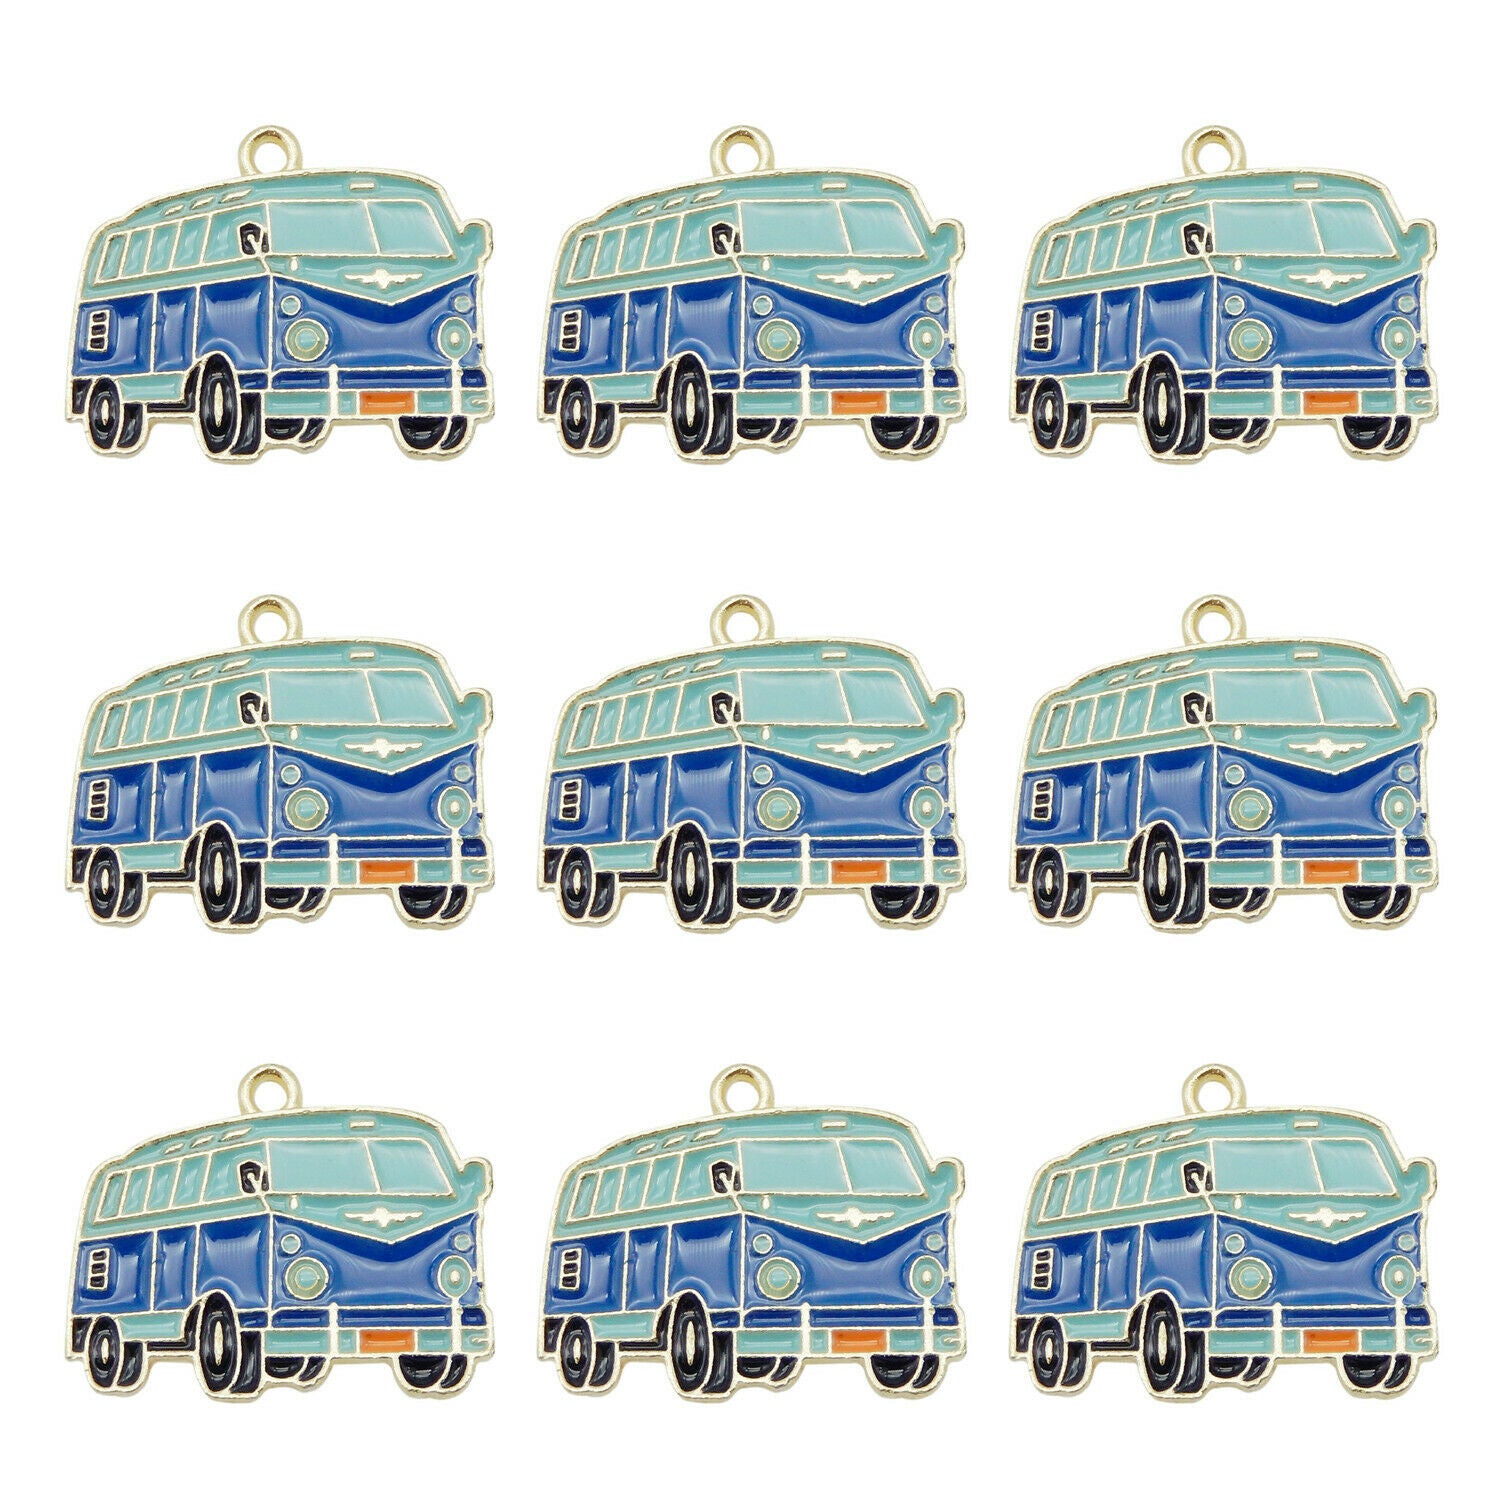 Wholesale Enamel Colorful School Buses Pendant Charms for Necklace Bracelet 6pcs